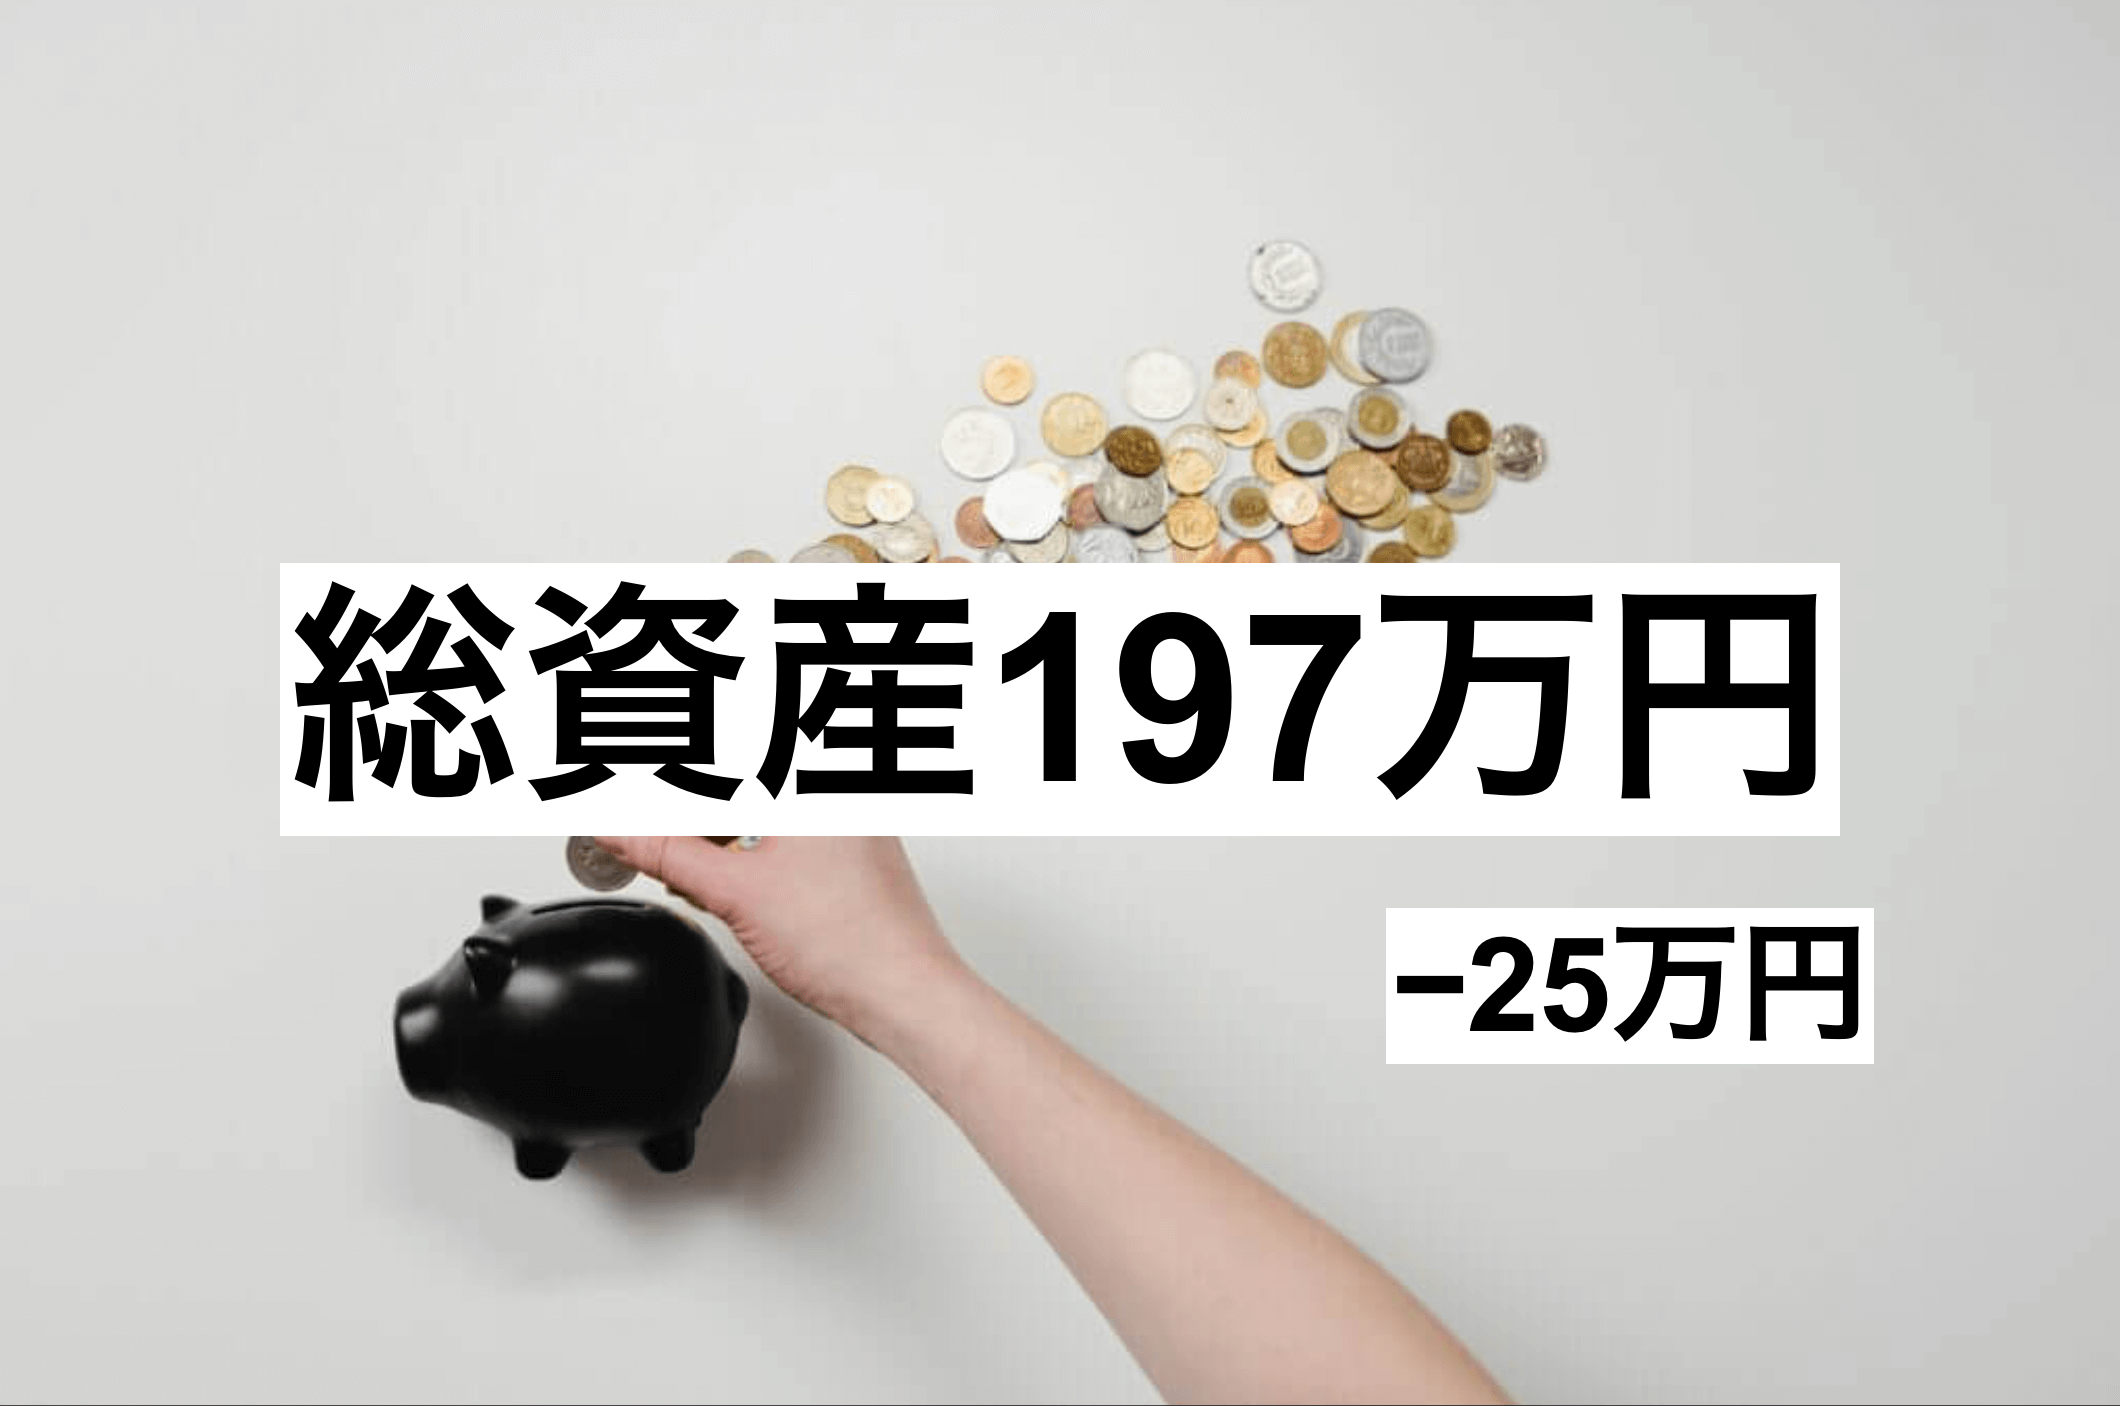 【2021年6月】社会人2年目サラリーマンの家計簿・総資産